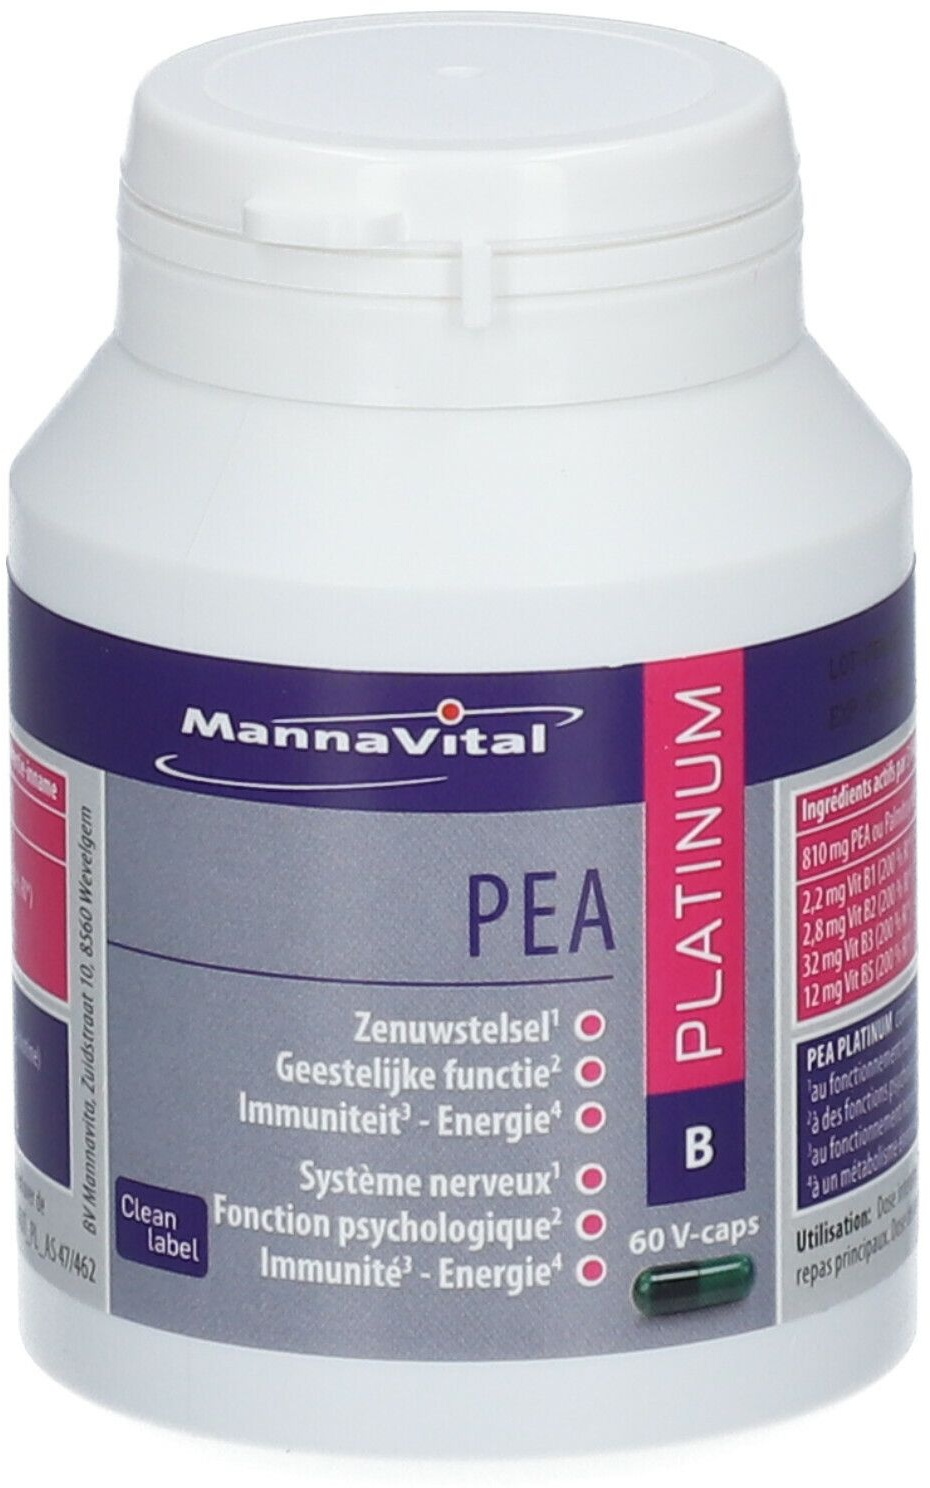 MannaVital Pea Platinum 60 pc(s) capsule(s)